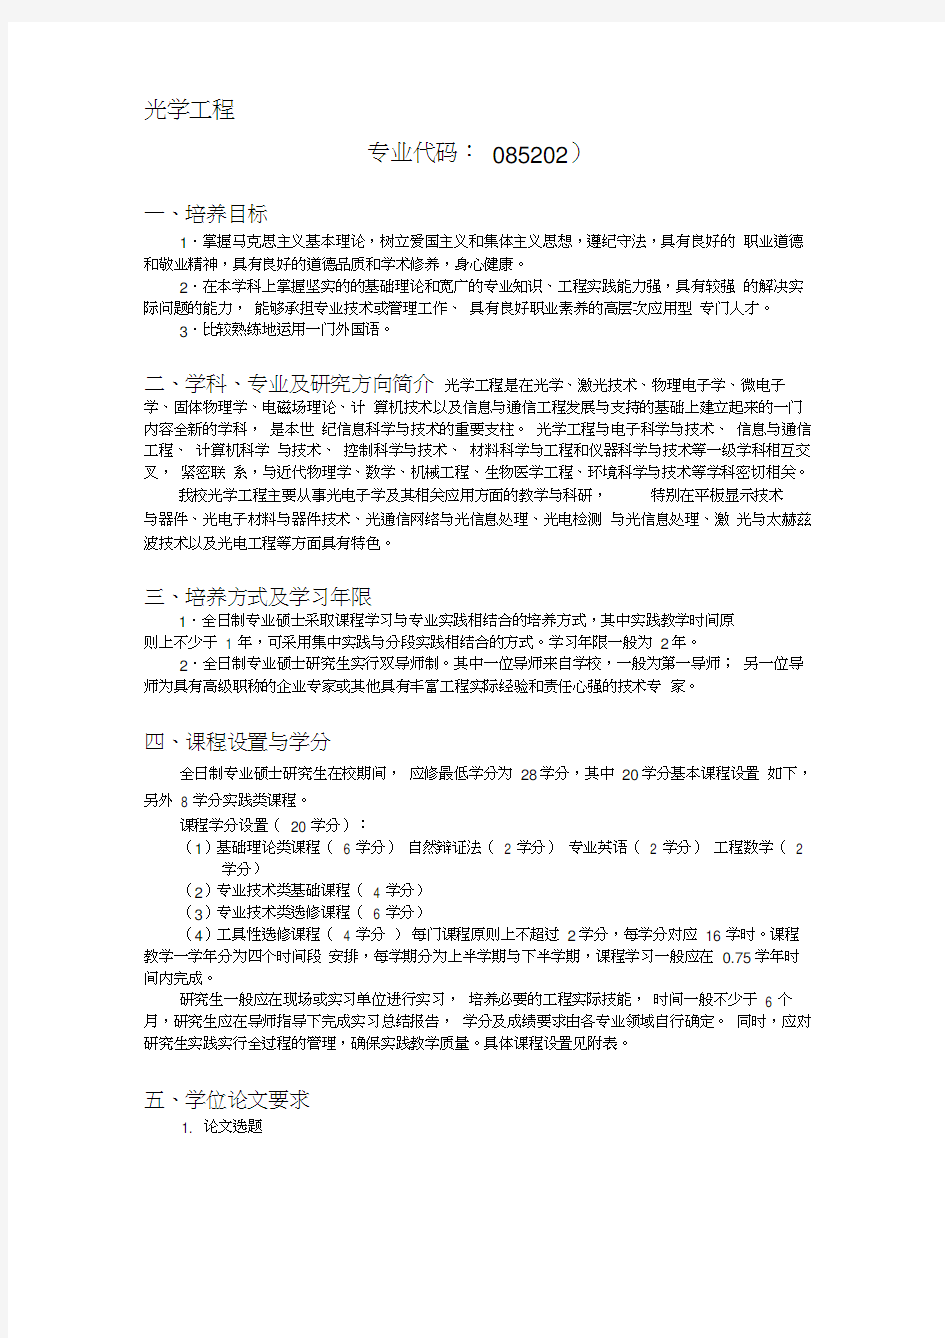 北京交通大学光学工程(专业硕士)培养方案